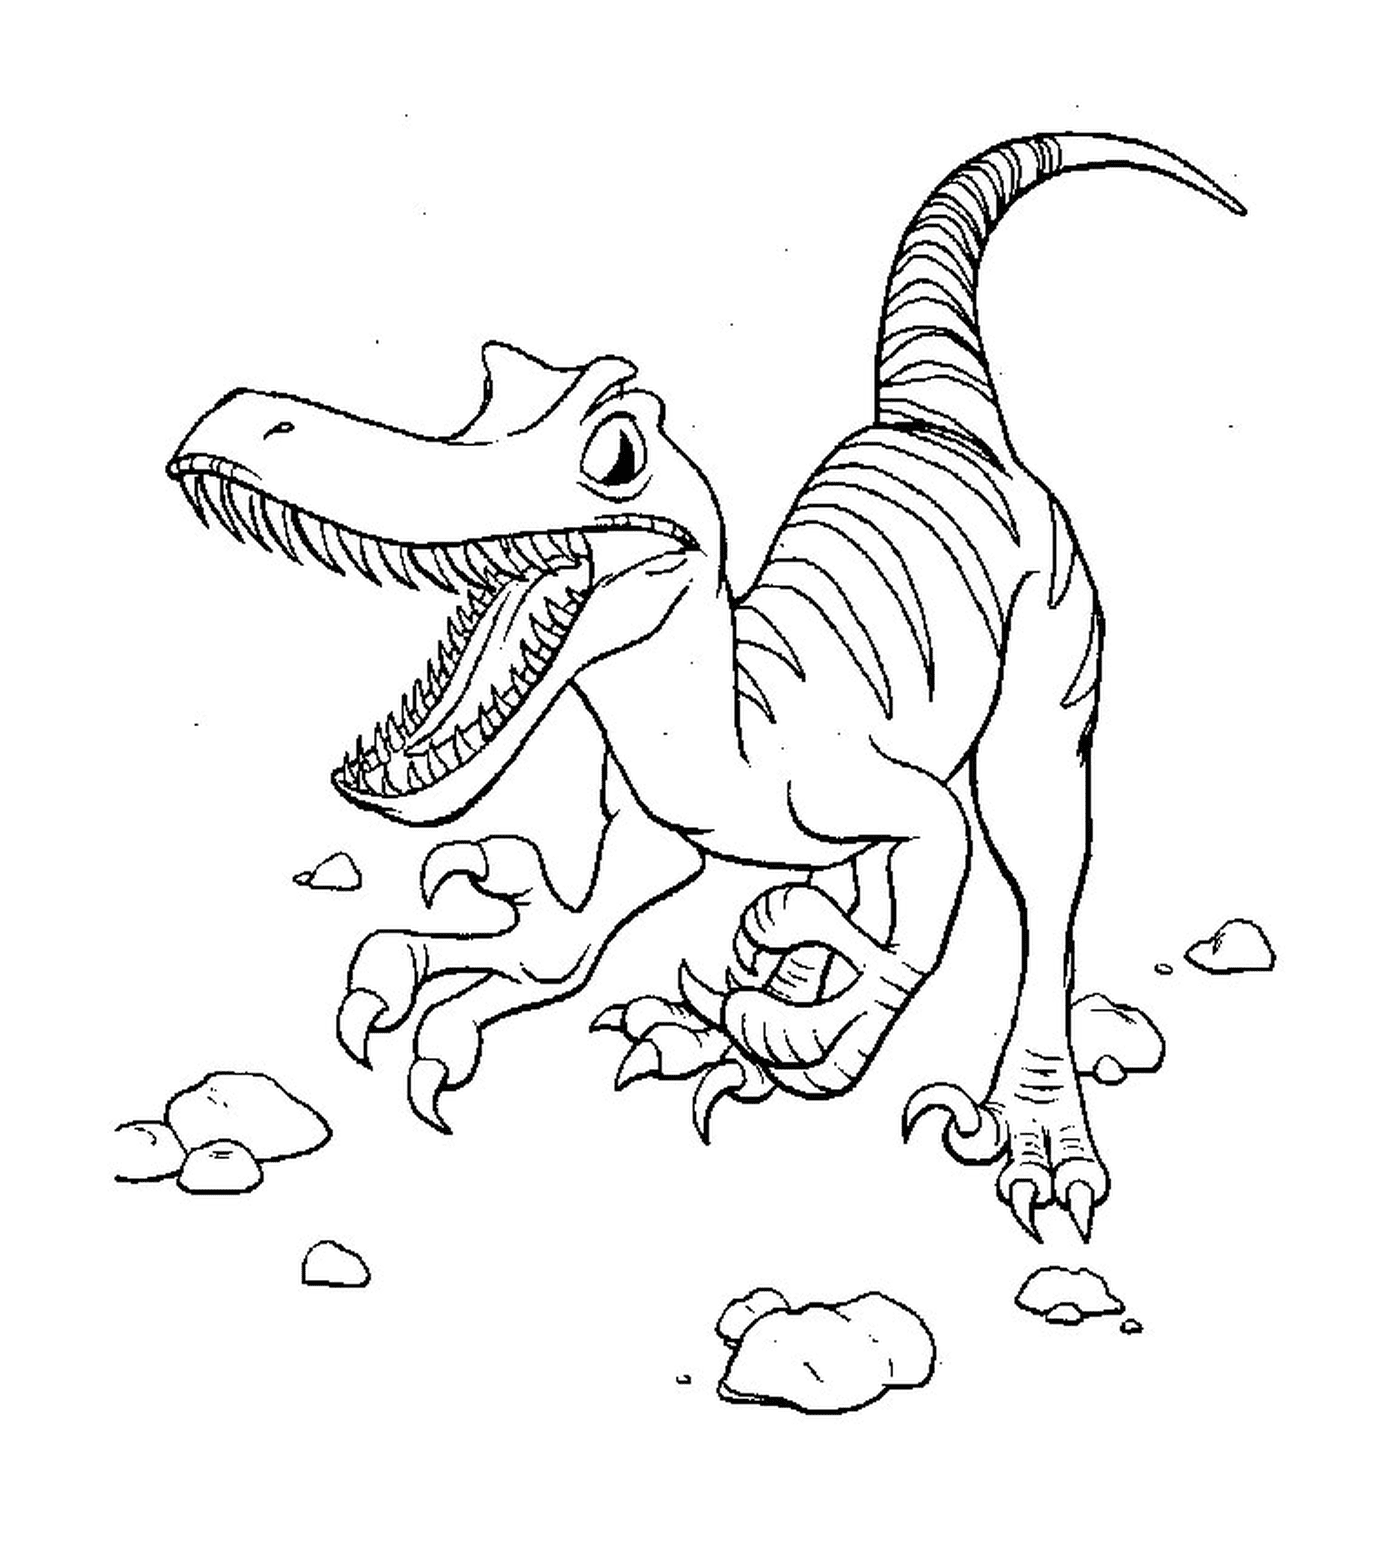  Dinosaurio en la tierra 